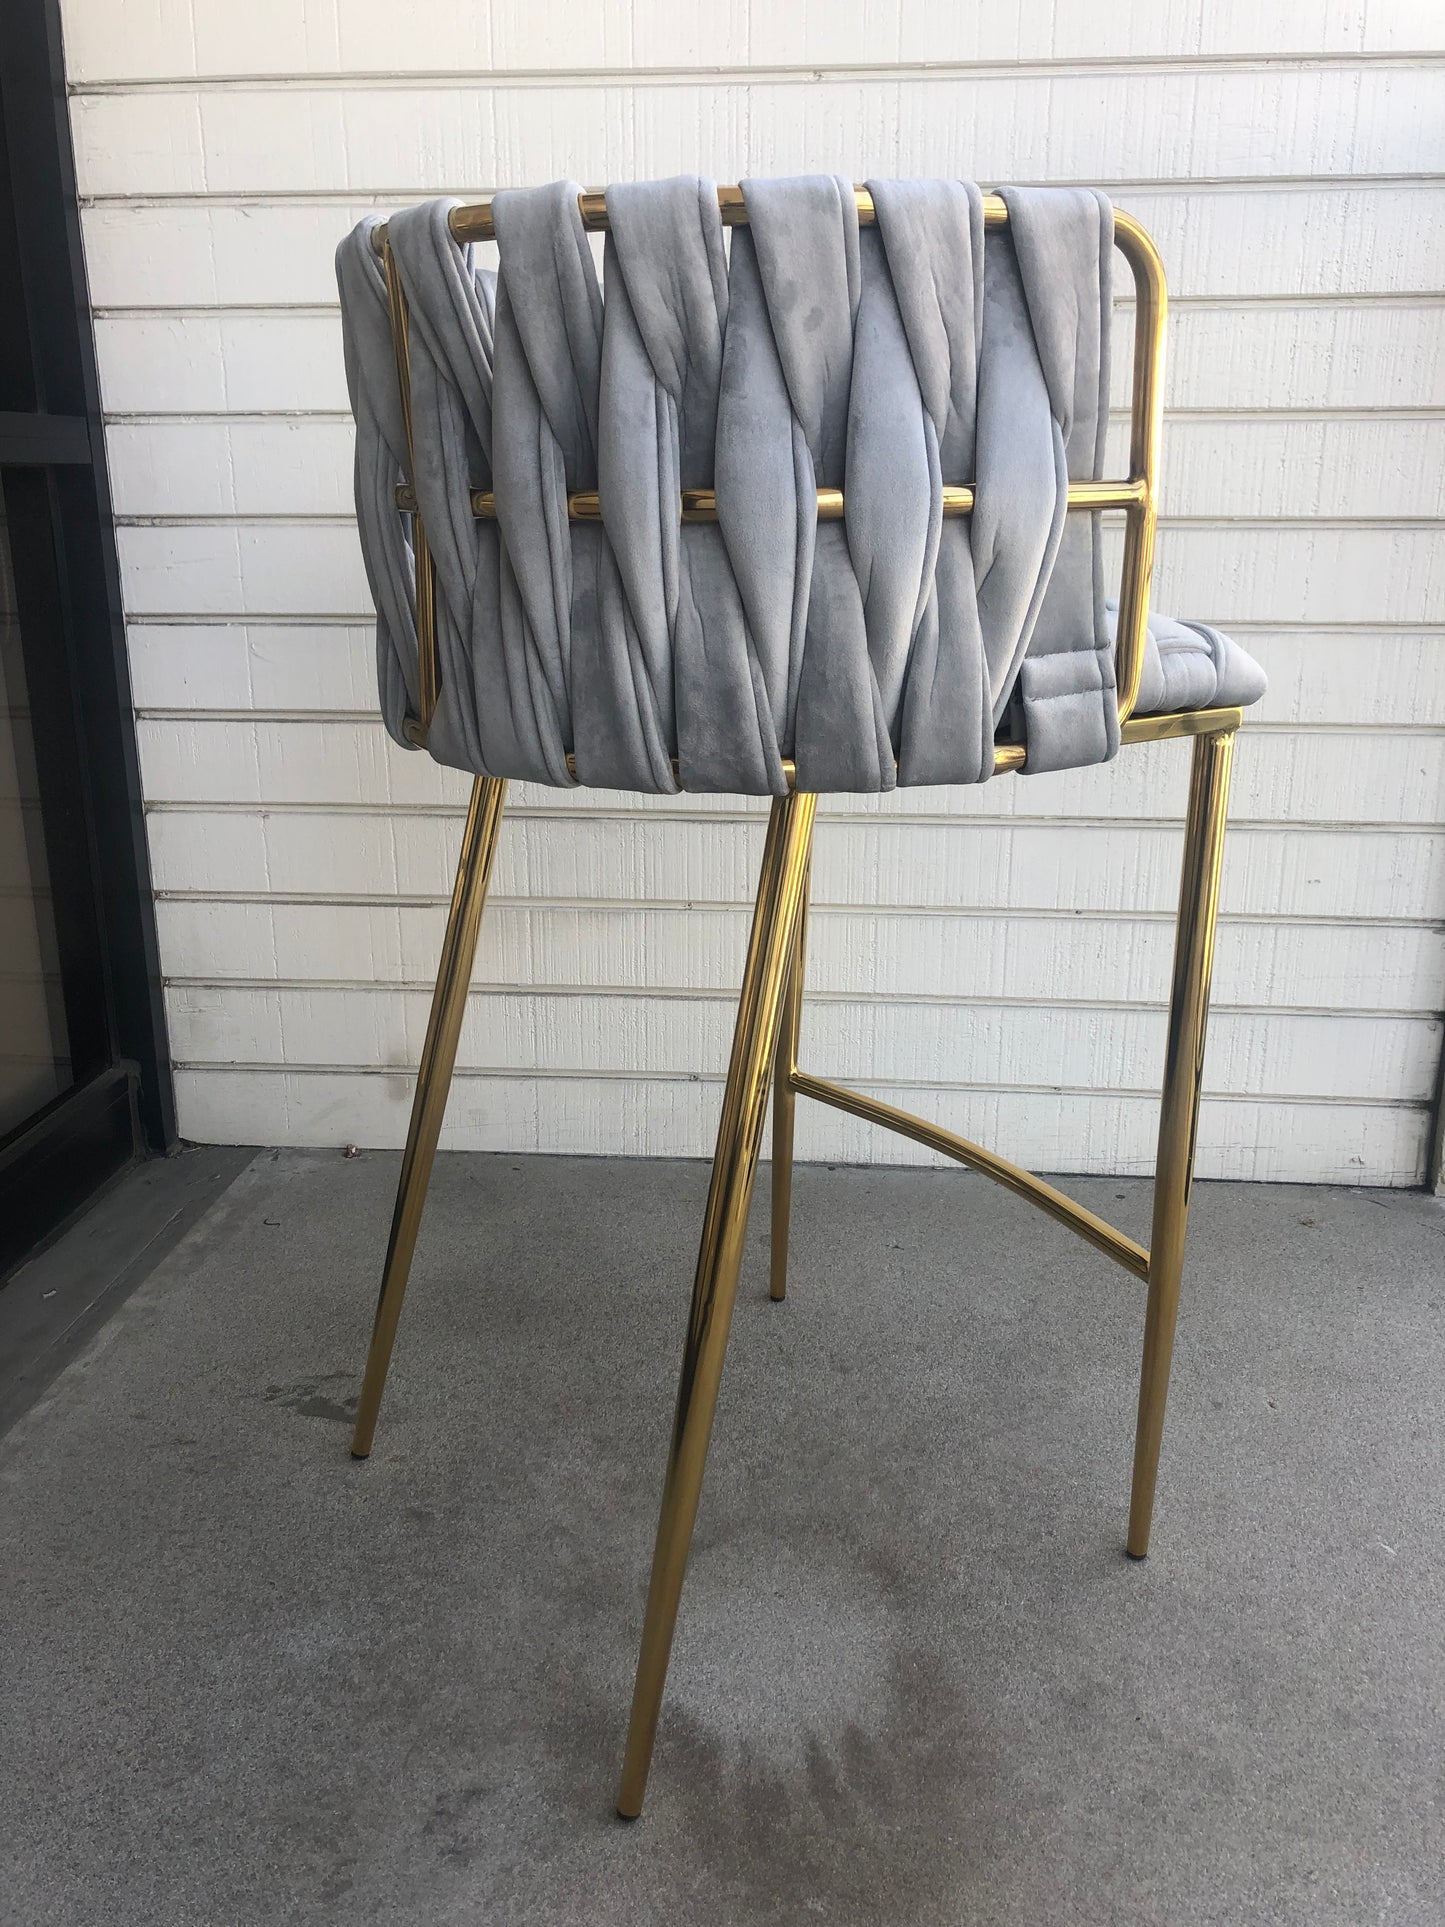 modern glam kitchen chair